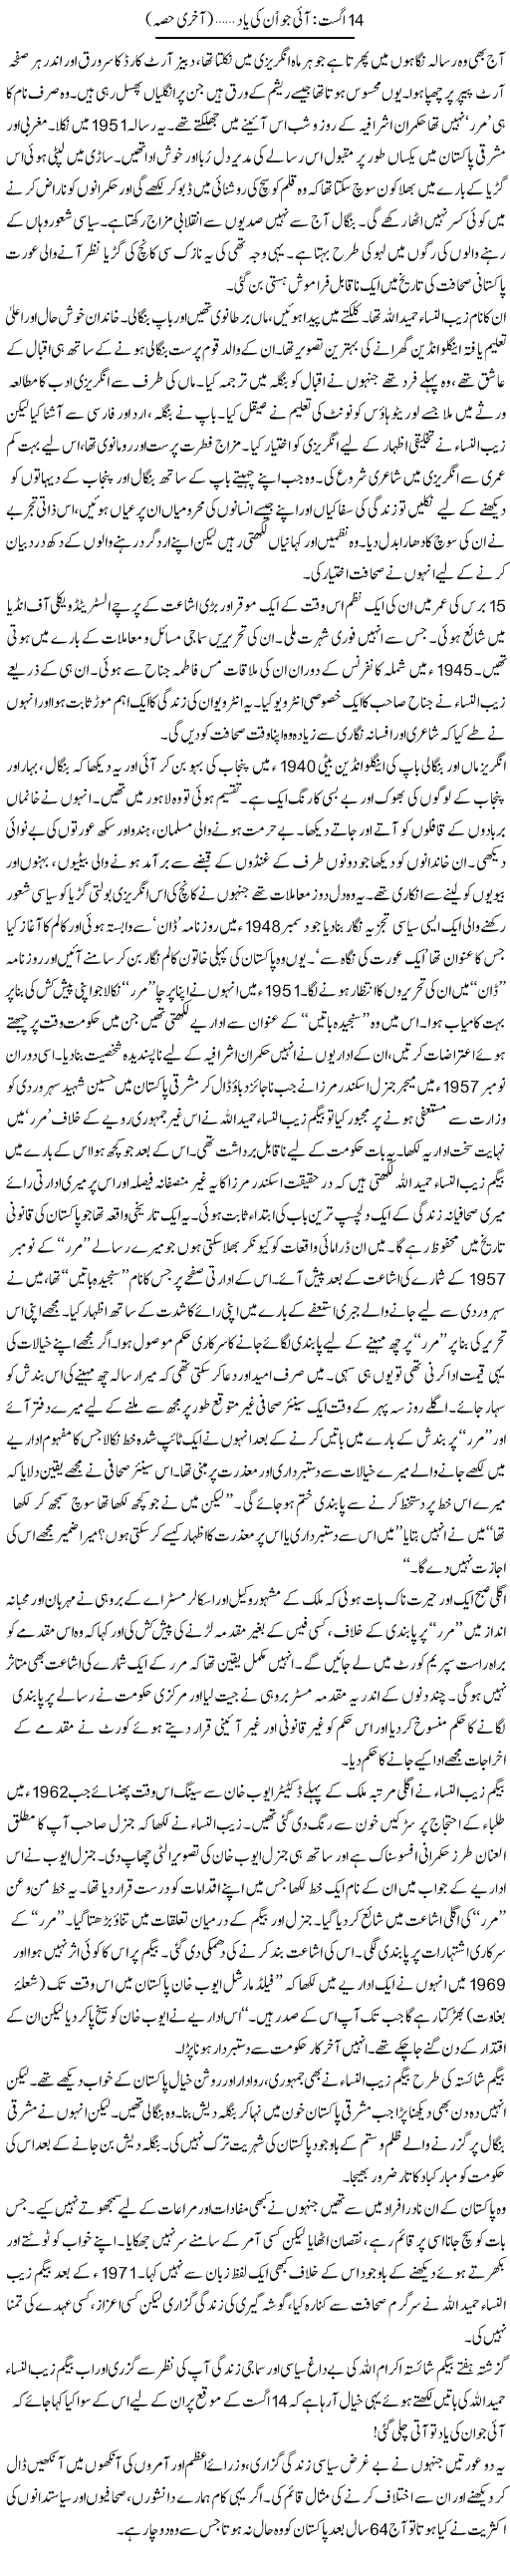 Azadi of Pakistan Express Column Zahida Hina 17 August 2011